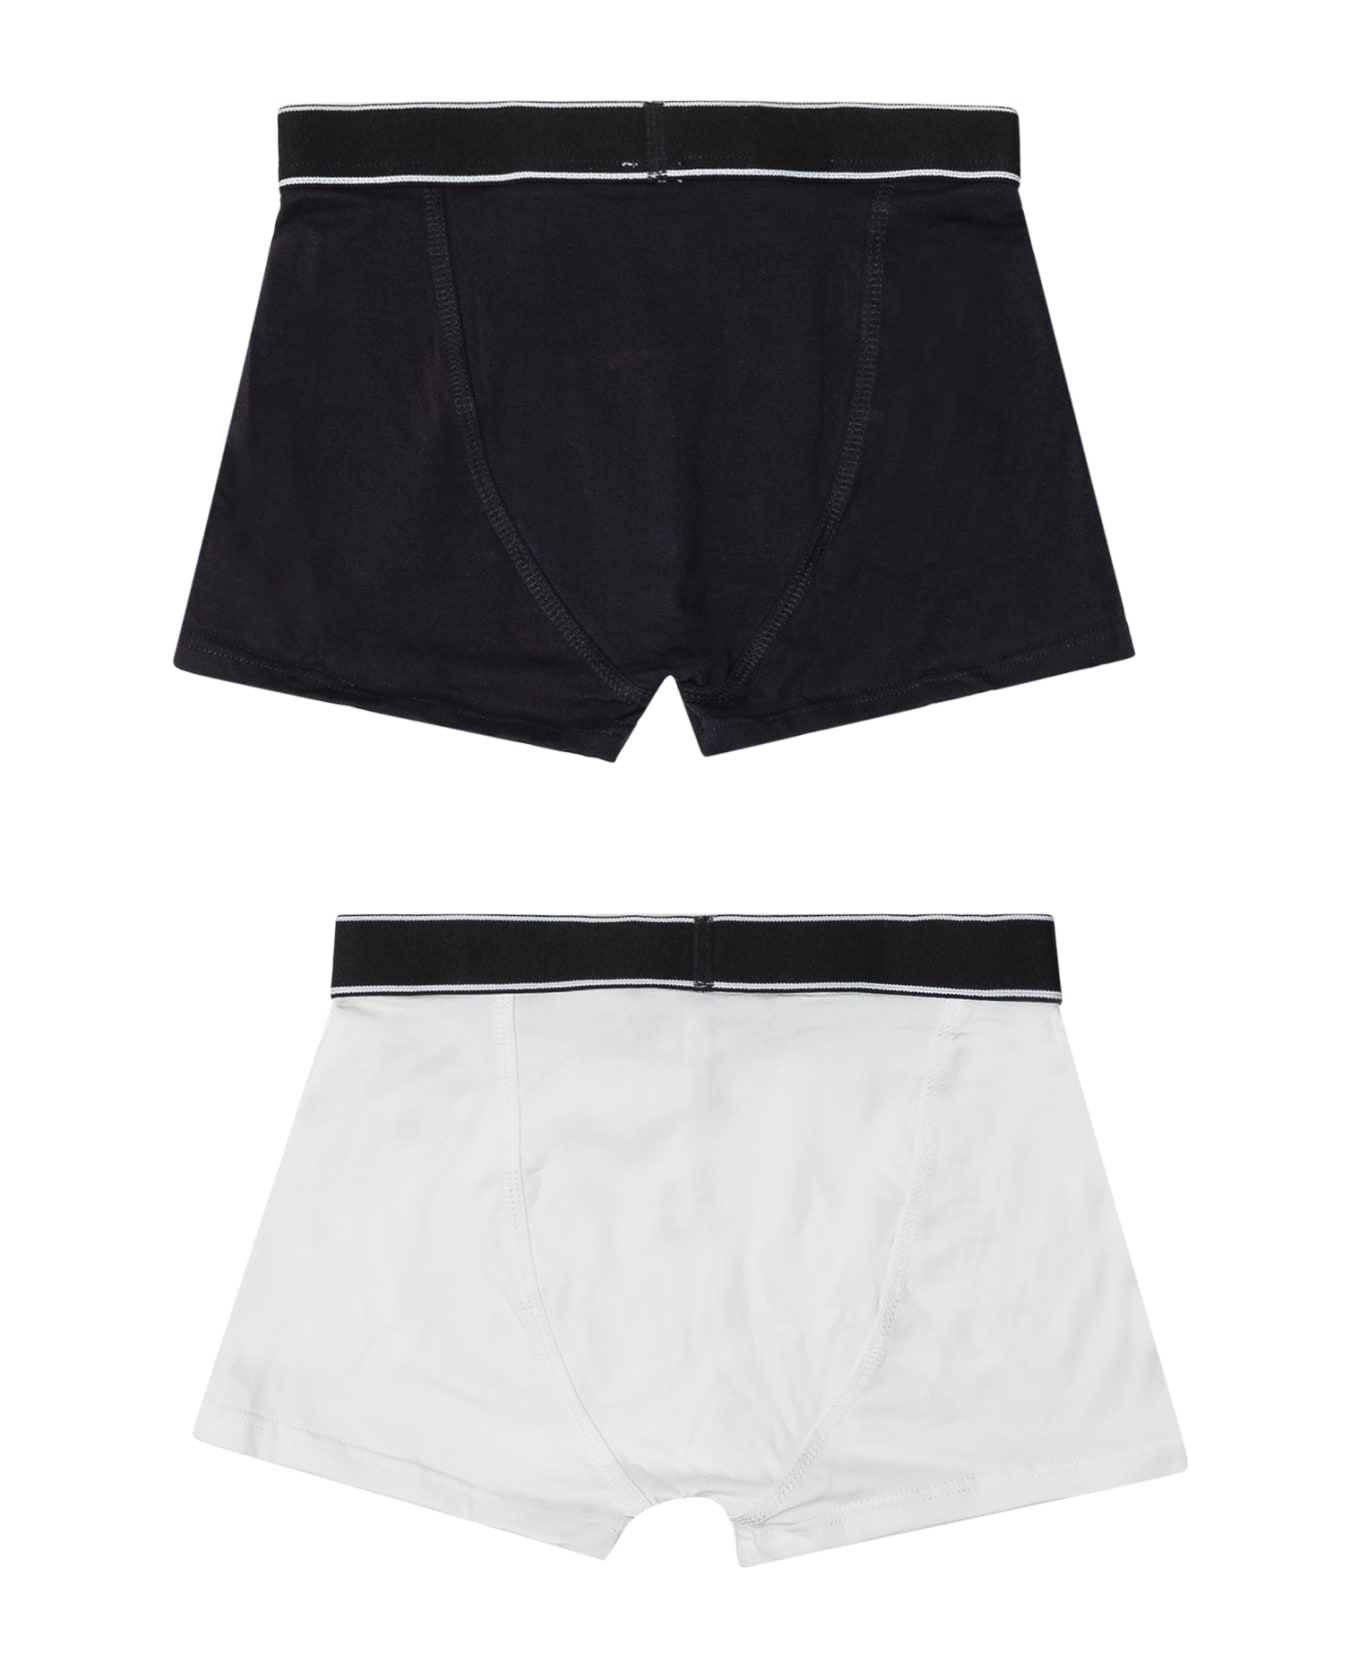 Hugo Boss Set Of 2 Boxer Shorts - NERO